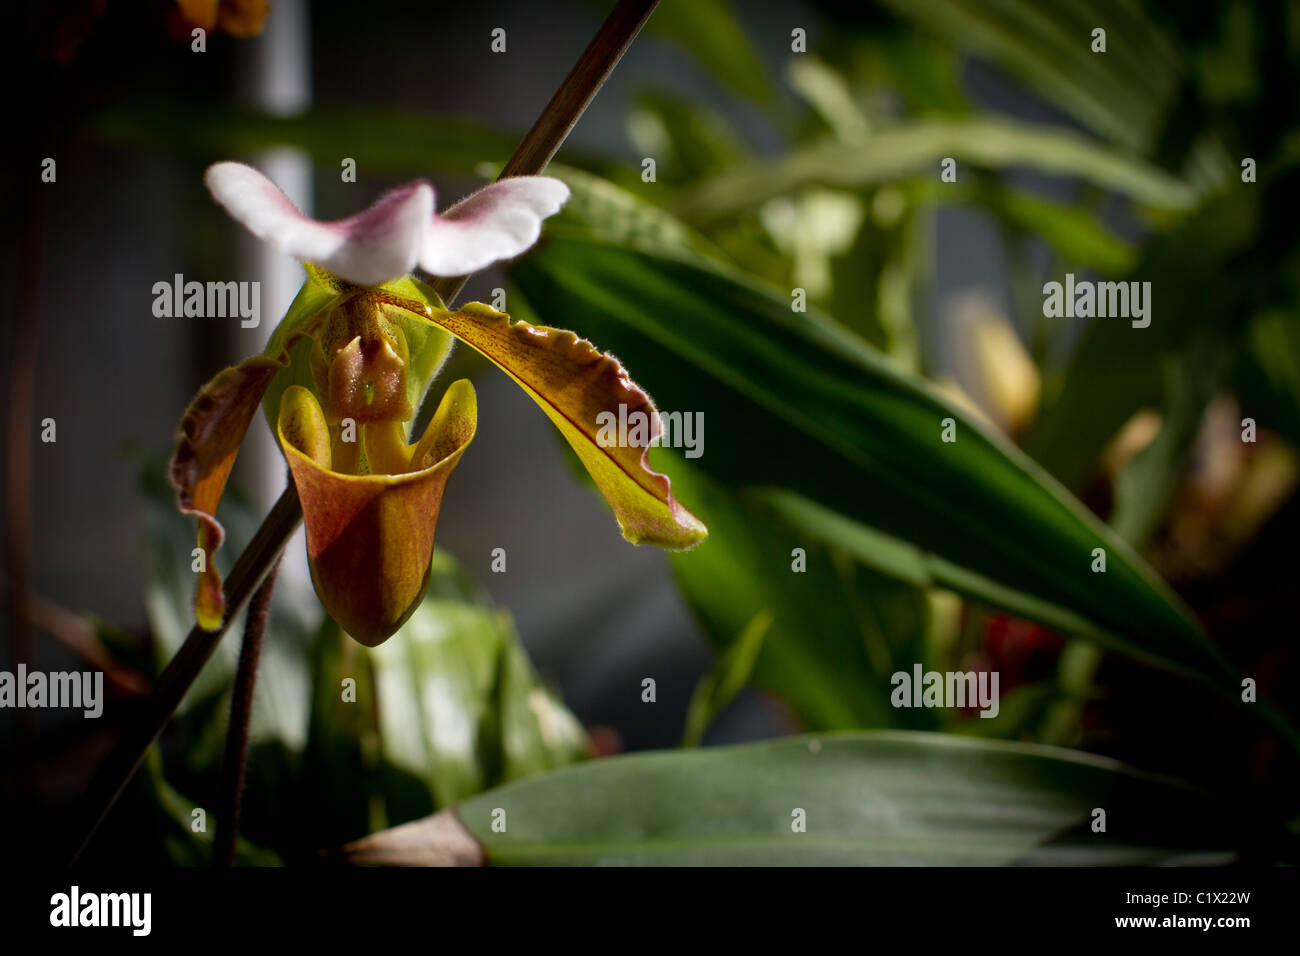 Paphiopedlium orchid in greenhouse Stock Photo